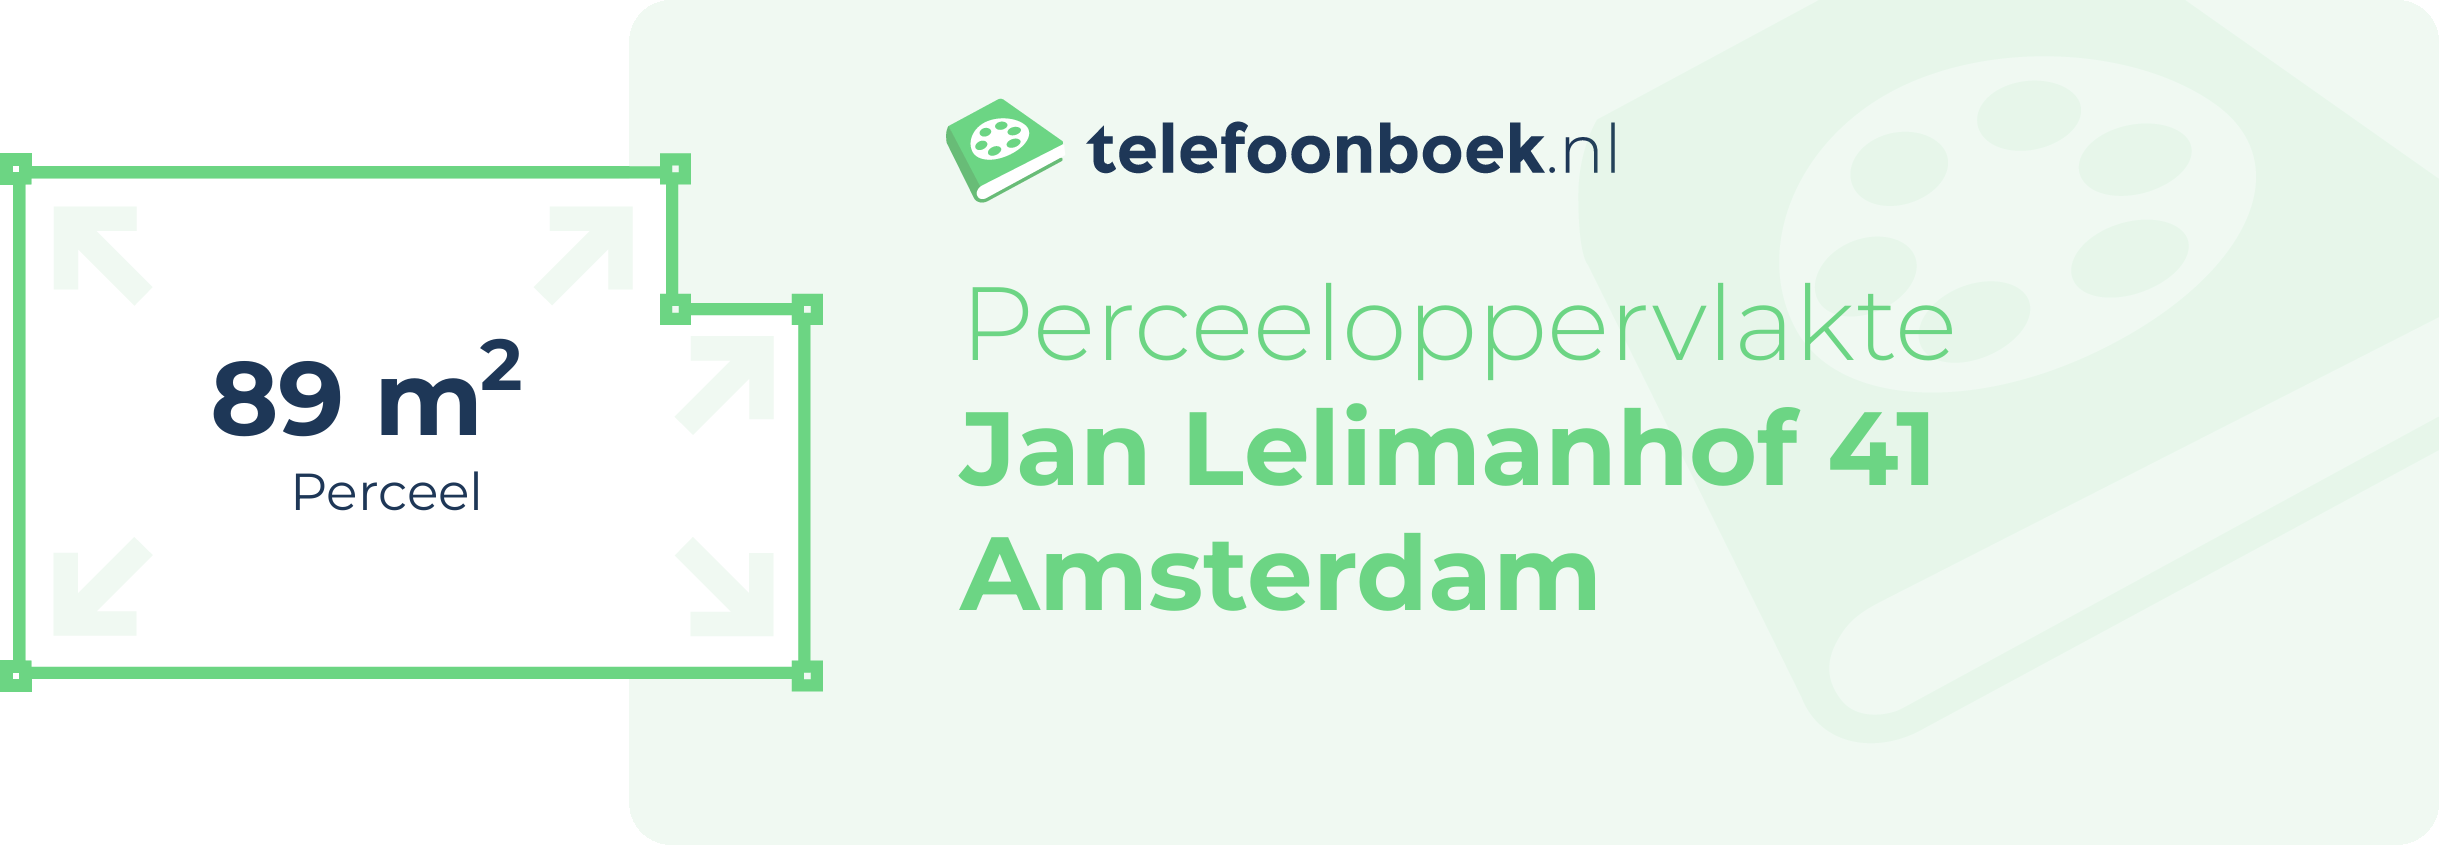 Perceeloppervlakte Jan Lelimanhof 41 Amsterdam